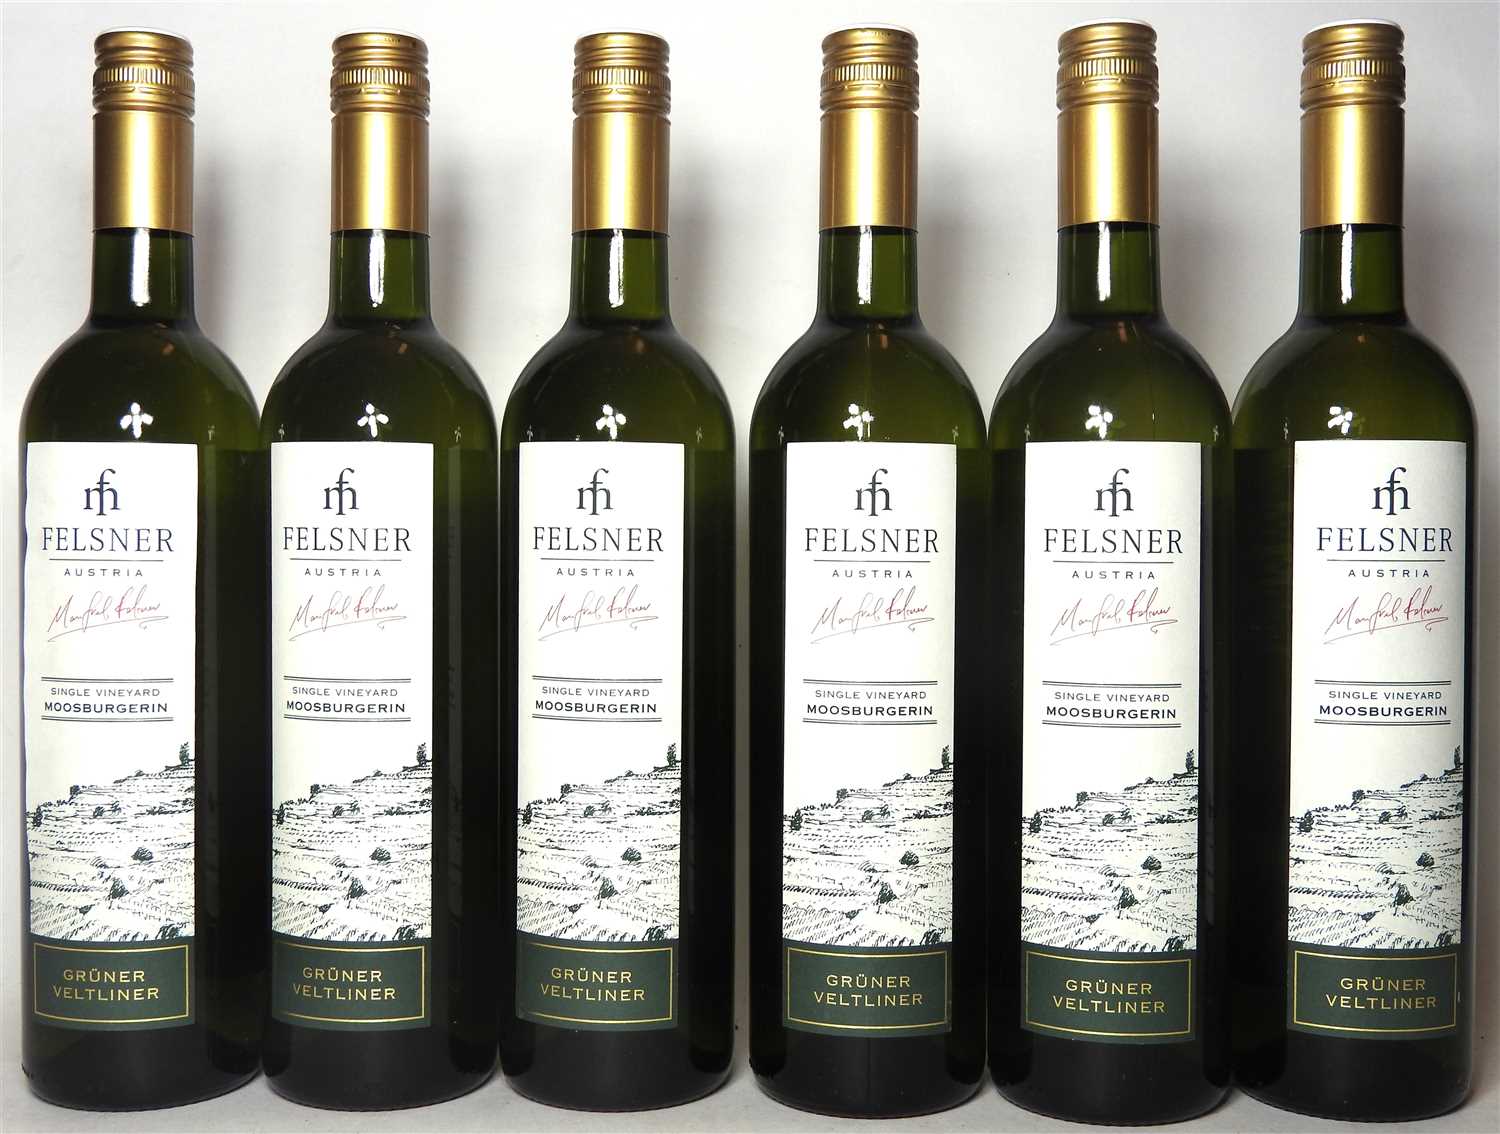 Lot 11 - Felsner, Grüner Veltliner, Moosburgerin, 2015, six bottles (boxed)